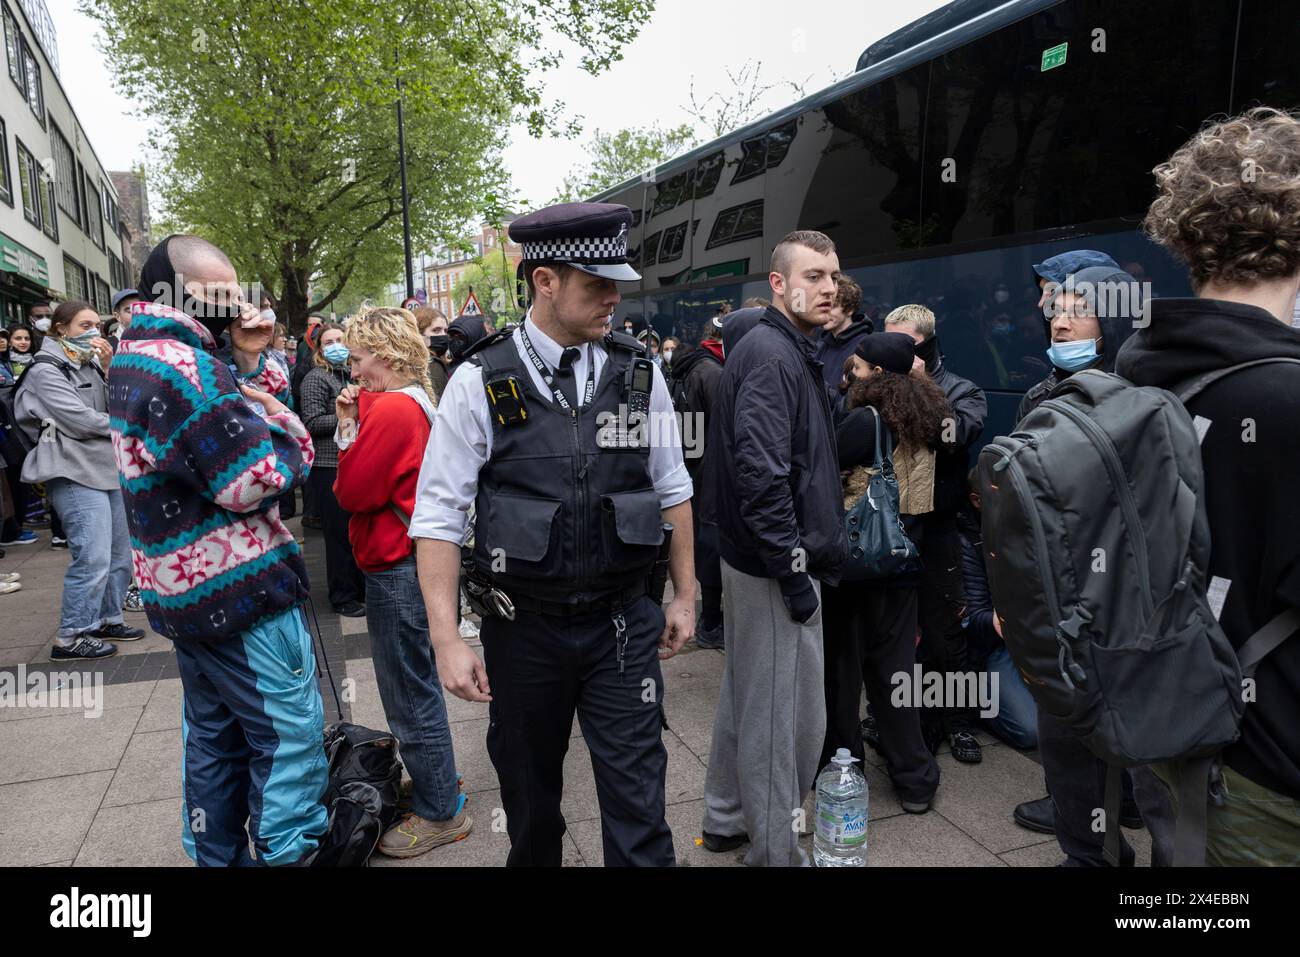 Ein Bus, der Asylsuchende abholen und zu dem von Demonstranten umgebenen Lastkahn Bibby Stockholm in Peckham South London, England, bringen soll Stockfoto